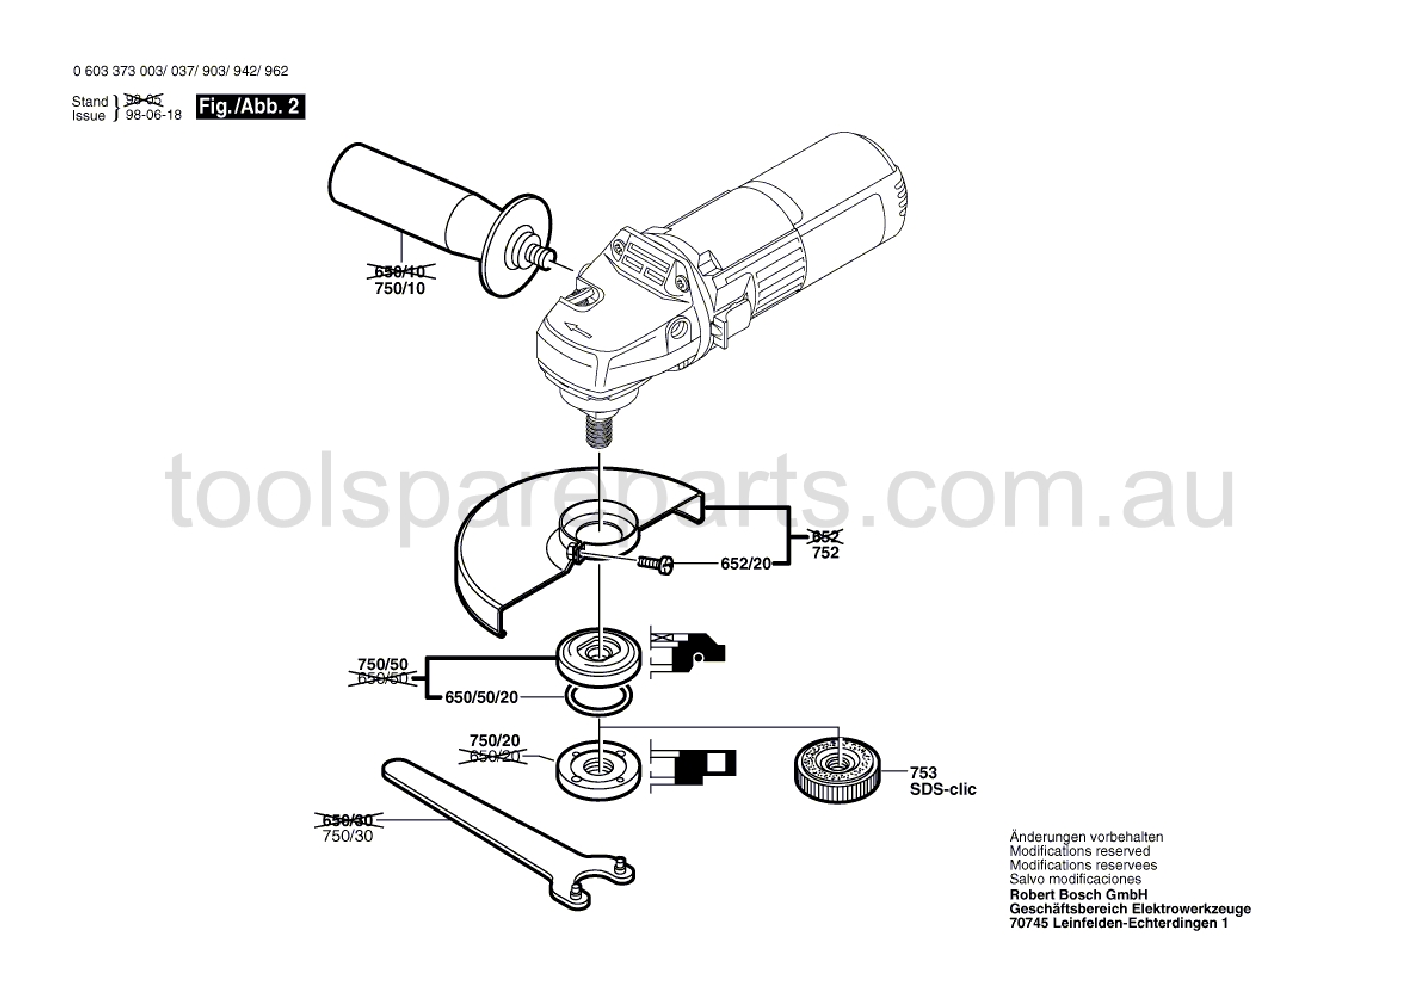 Bosch PWS 7-115 0603373037  Diagram 2